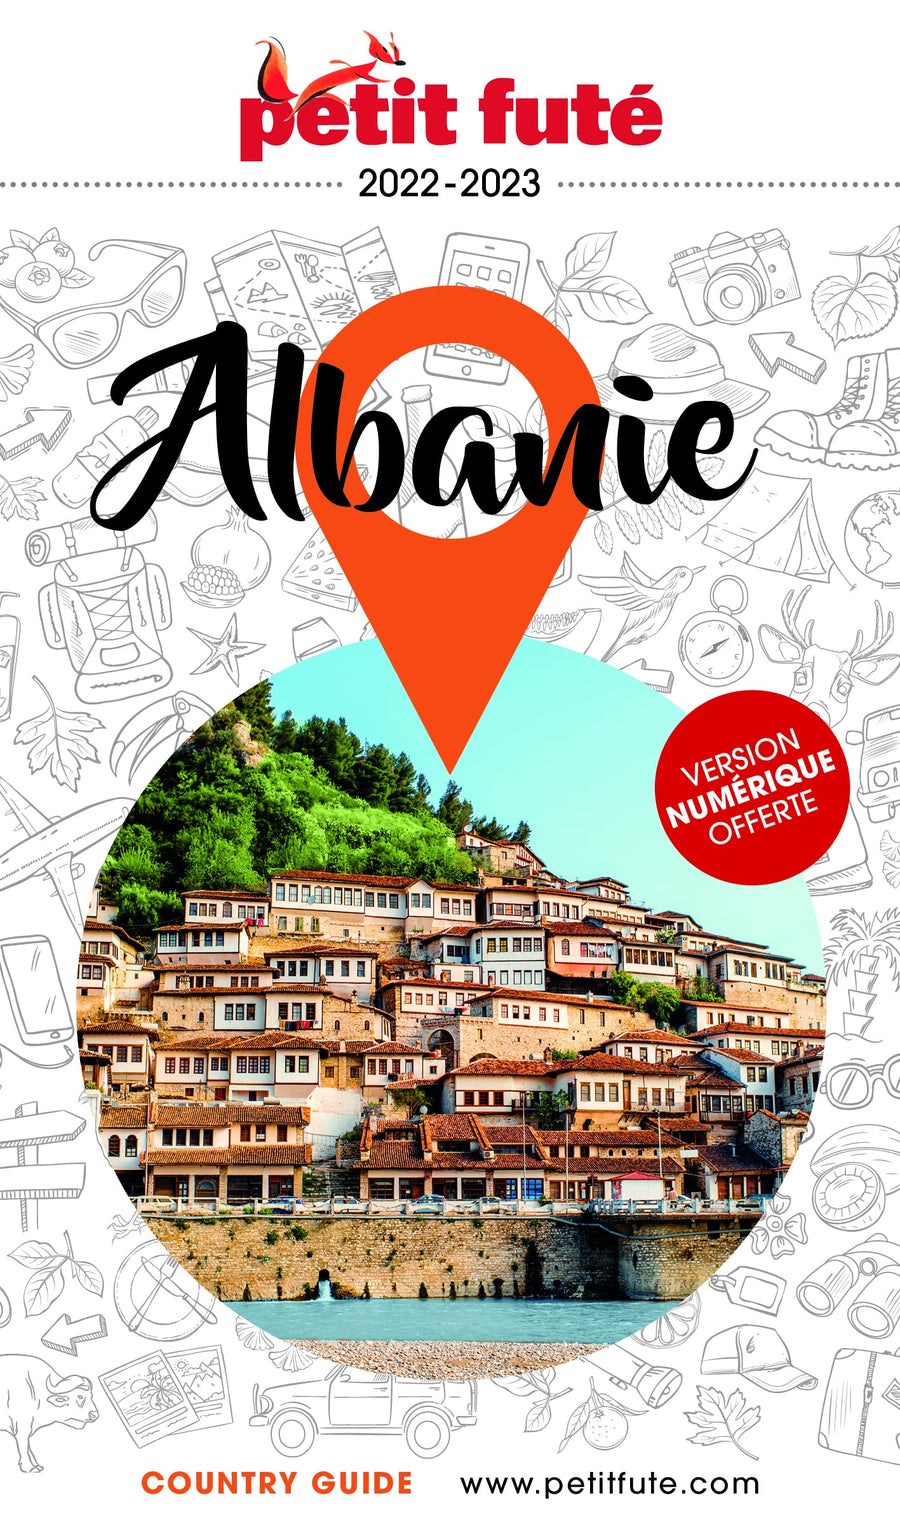 Guide de voyage - Albanie 2022/23 | Petit Futé guide de voyage Petit Futé 